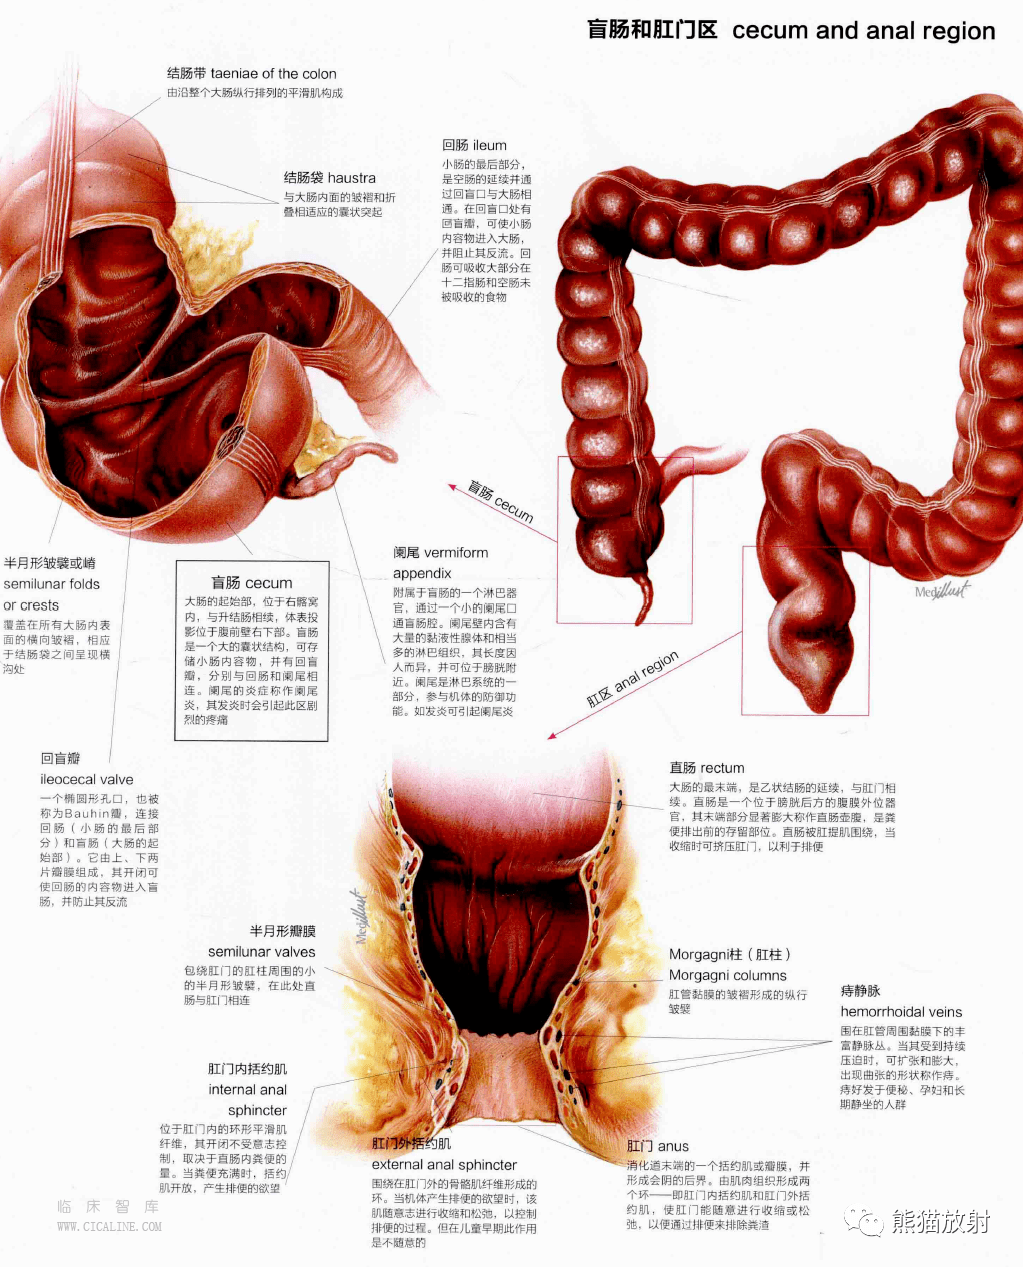 人体图谱丨消化系统口腔至肛门